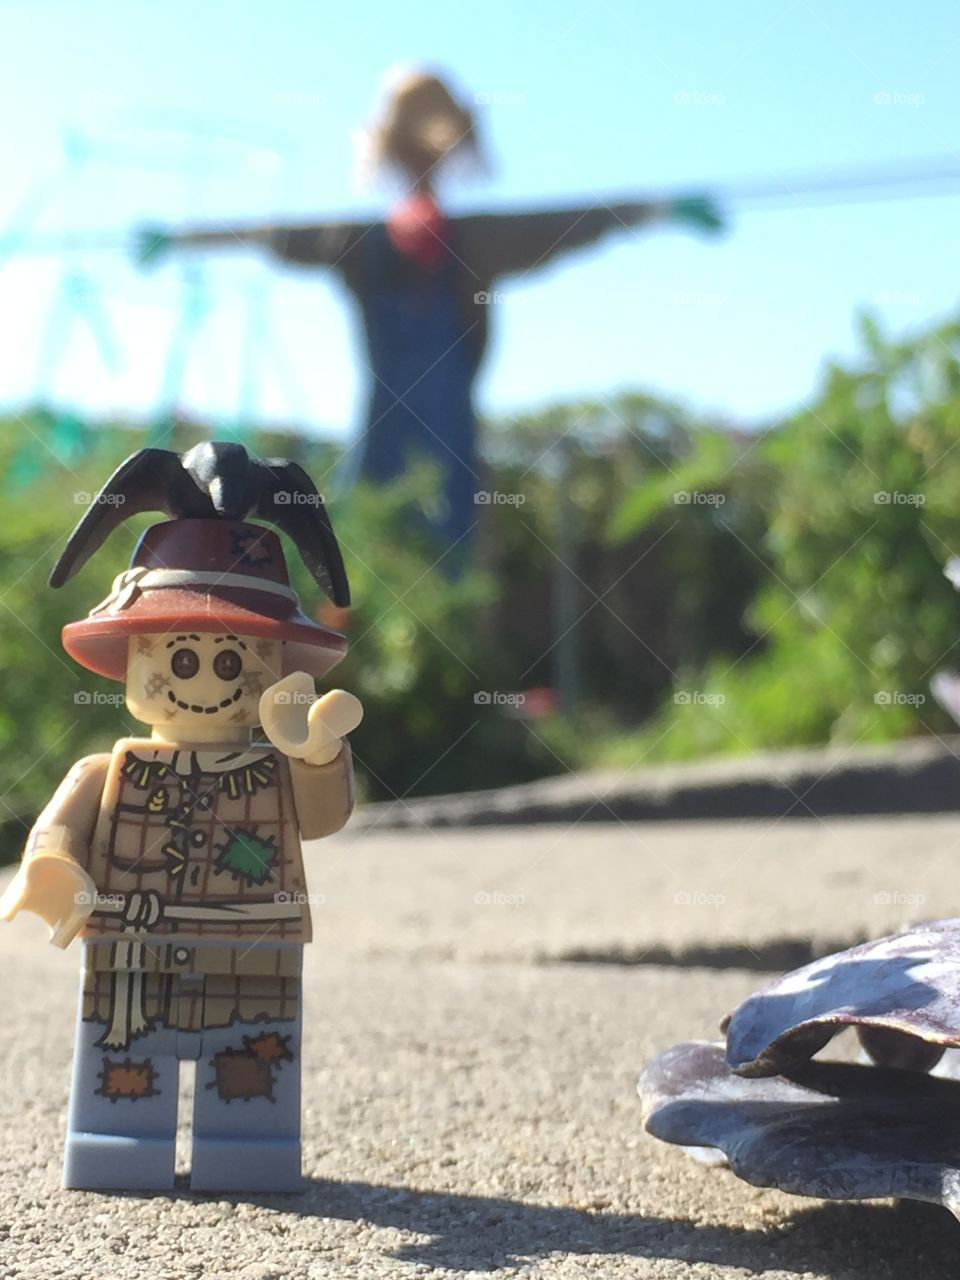 Lego scarecrow